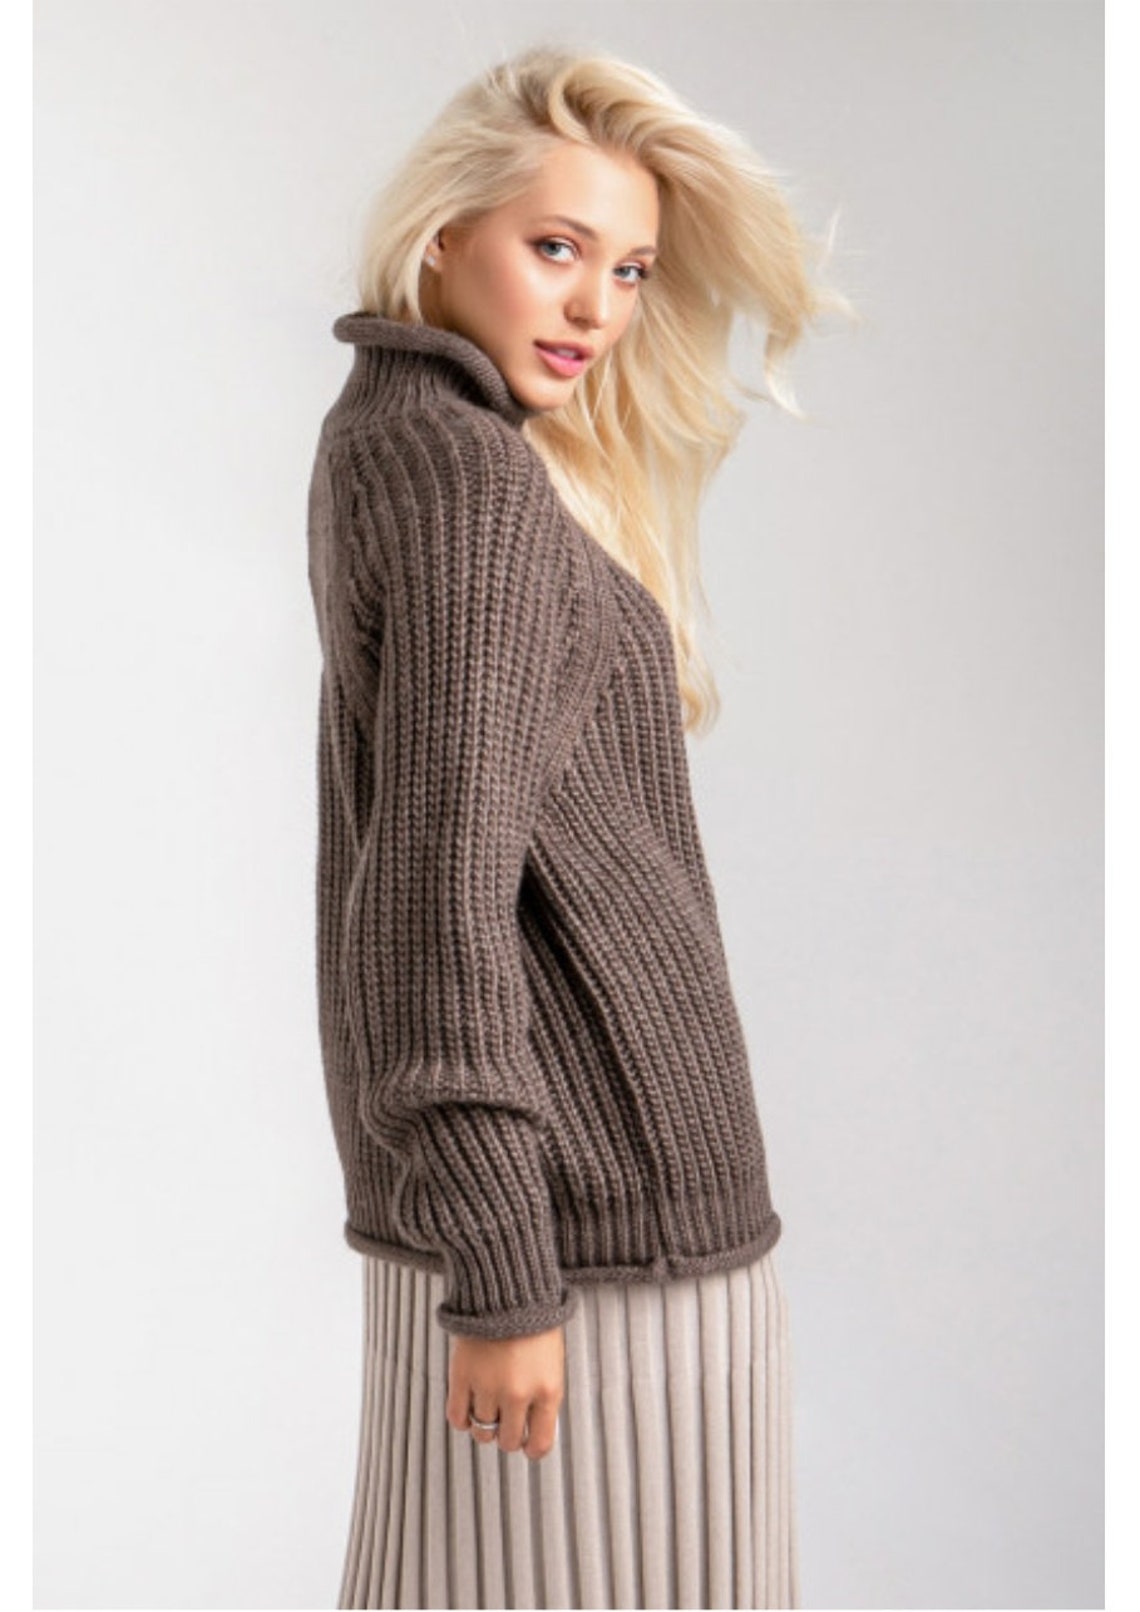 Easy Care 100 % Merino Sweater Womens Oversized Superwash | Etsy